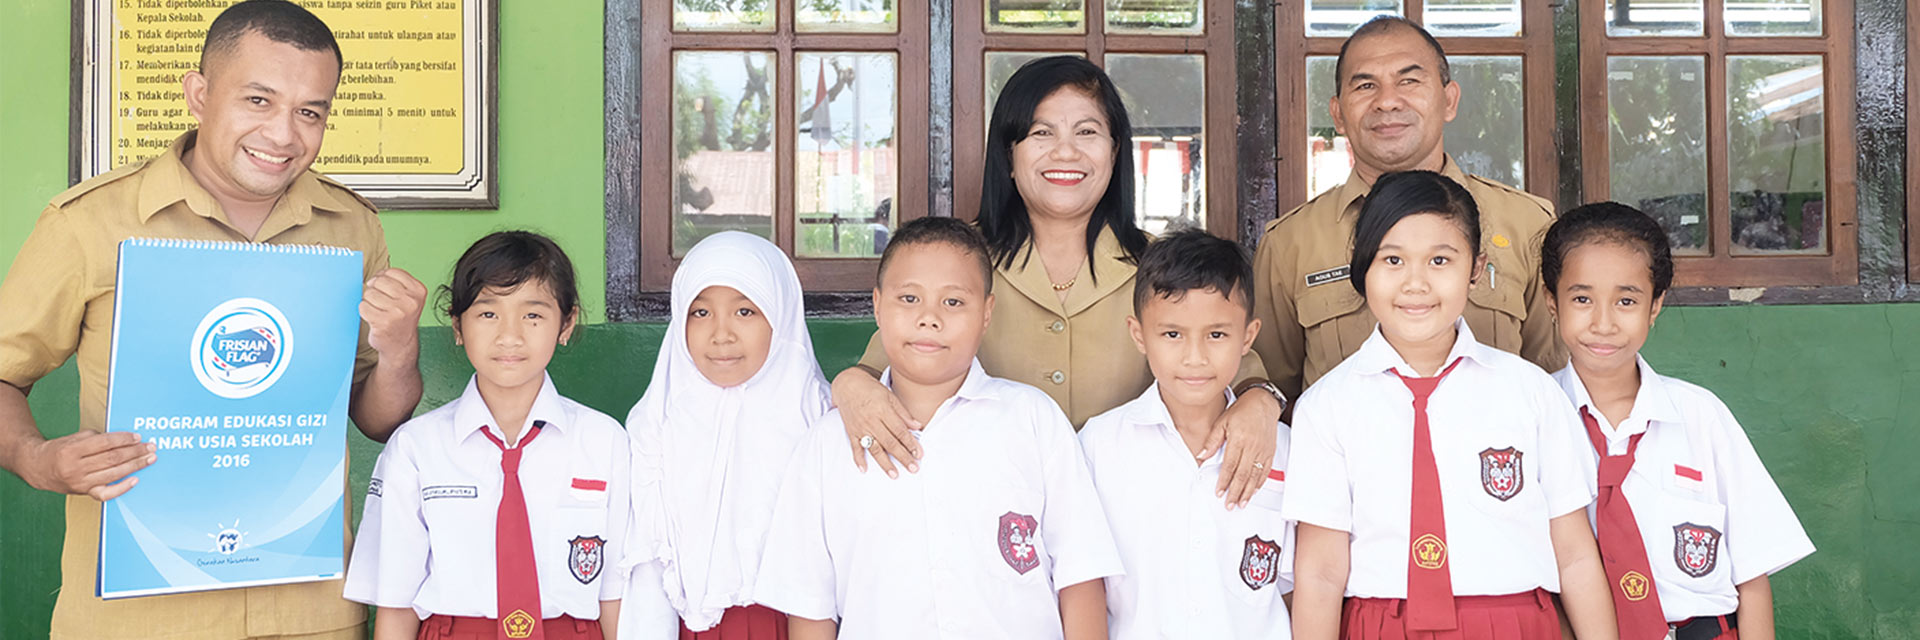 frisian flag bantu cetak generasi sehat indonesia